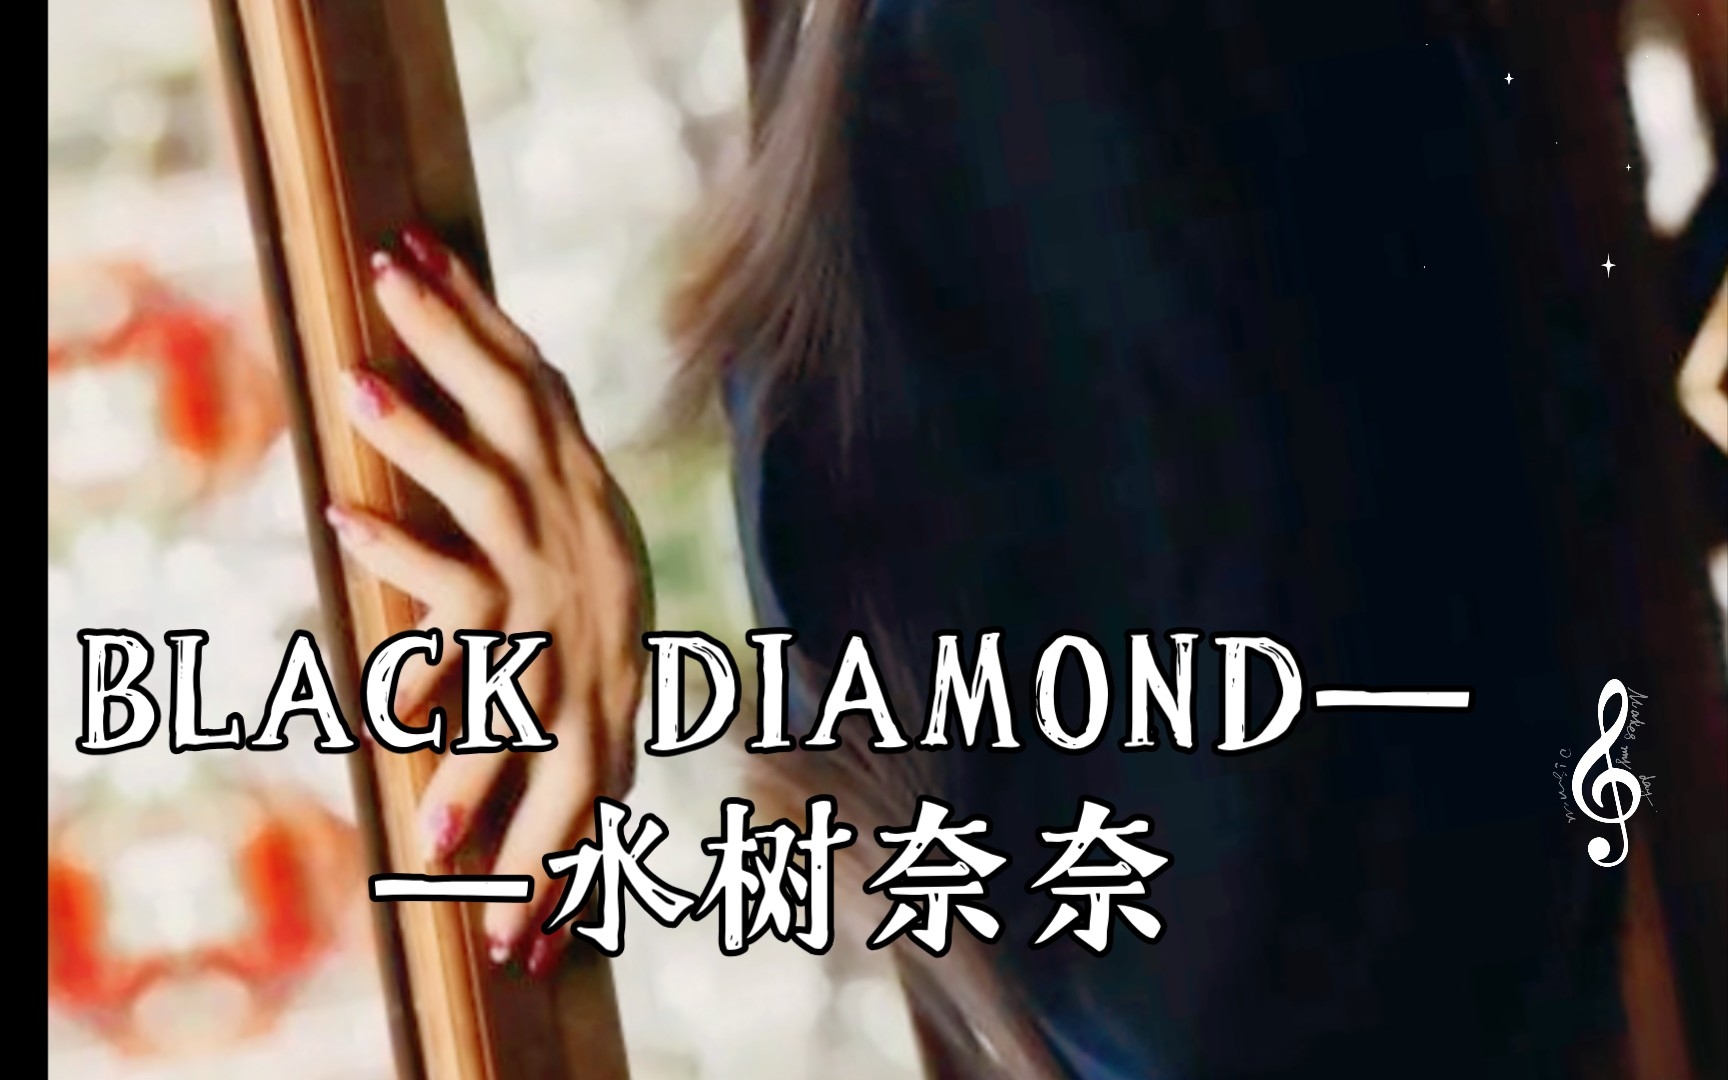 BLACK DIAMOND(黑色钻石)——水树奈奈